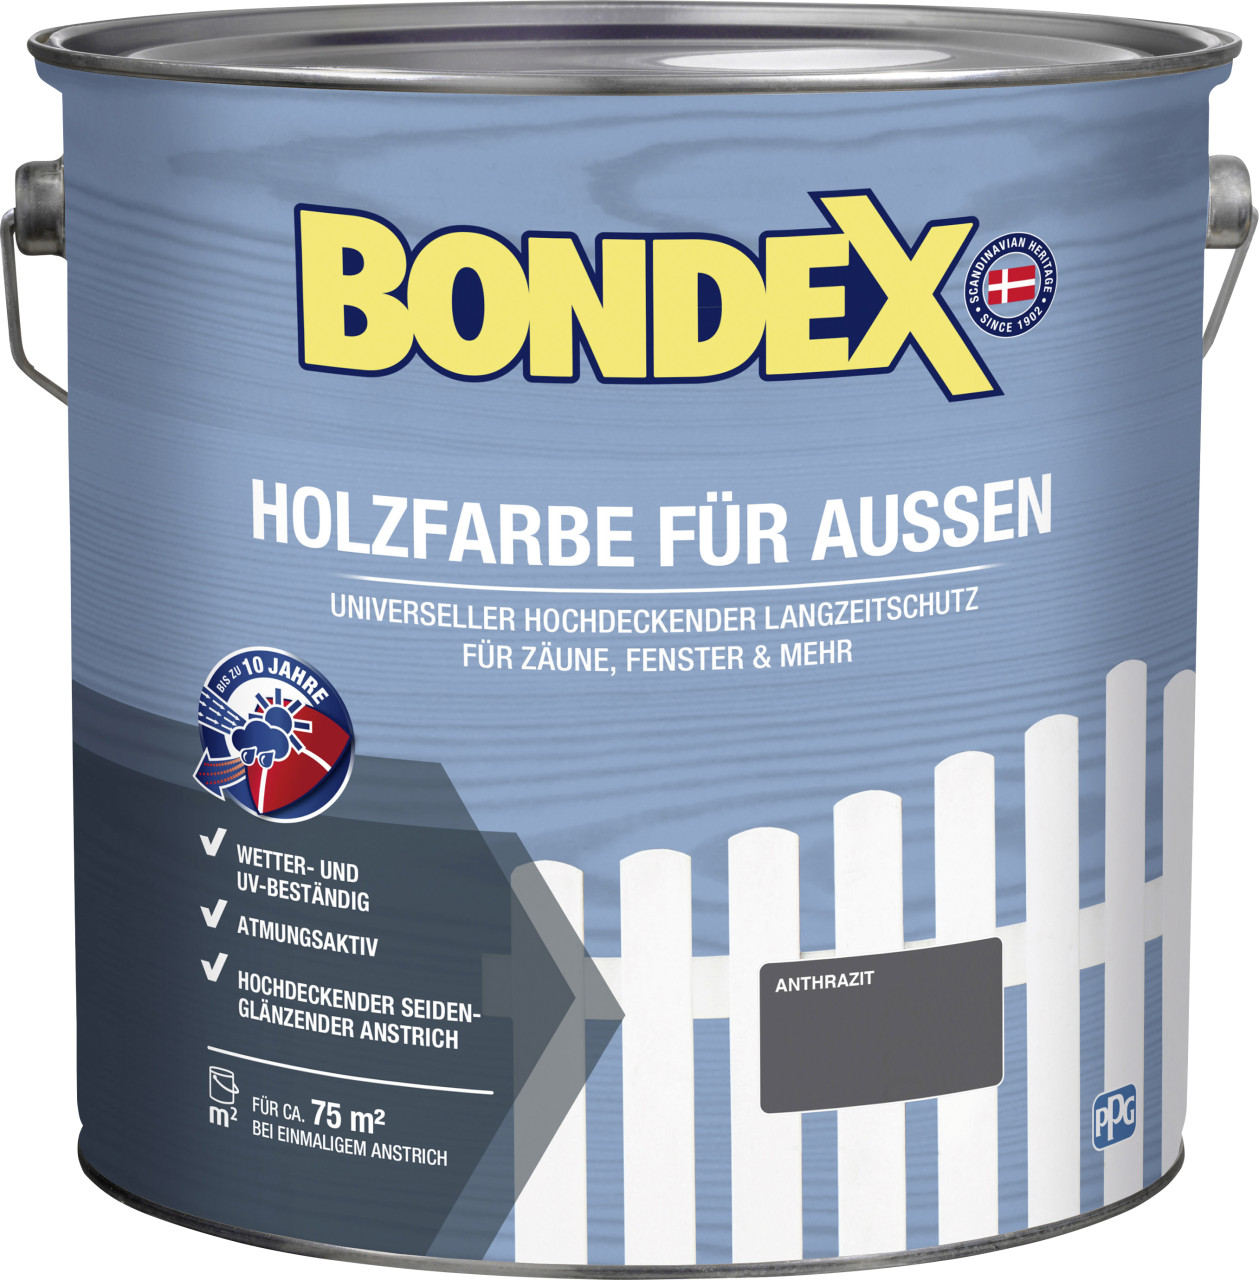 Bondex Holzfarbe für Aussen 7,5 L anthrazit von Bondex